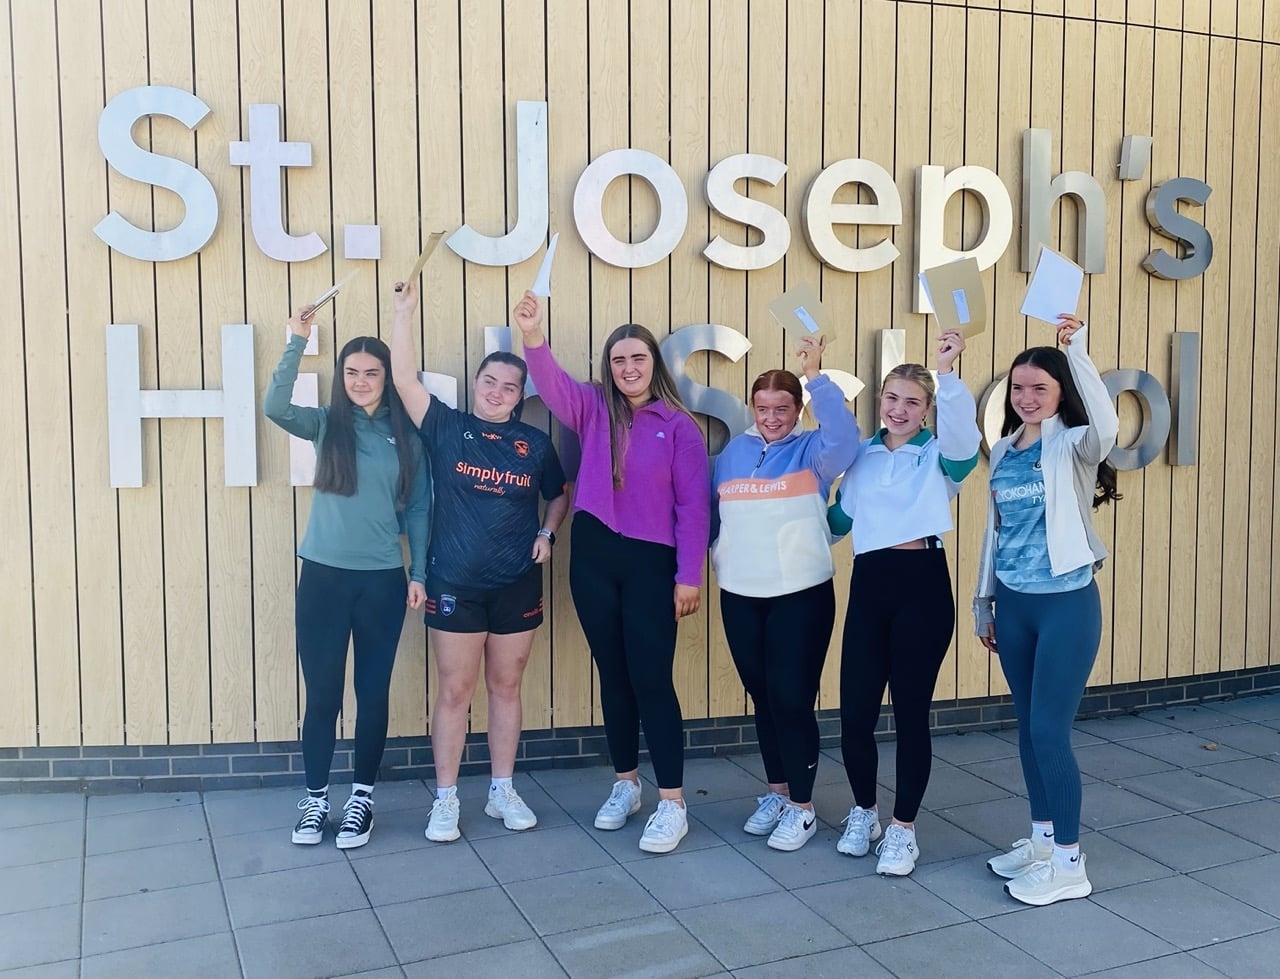 GCSE Results Day at St Jospeh's in Crossmaglen